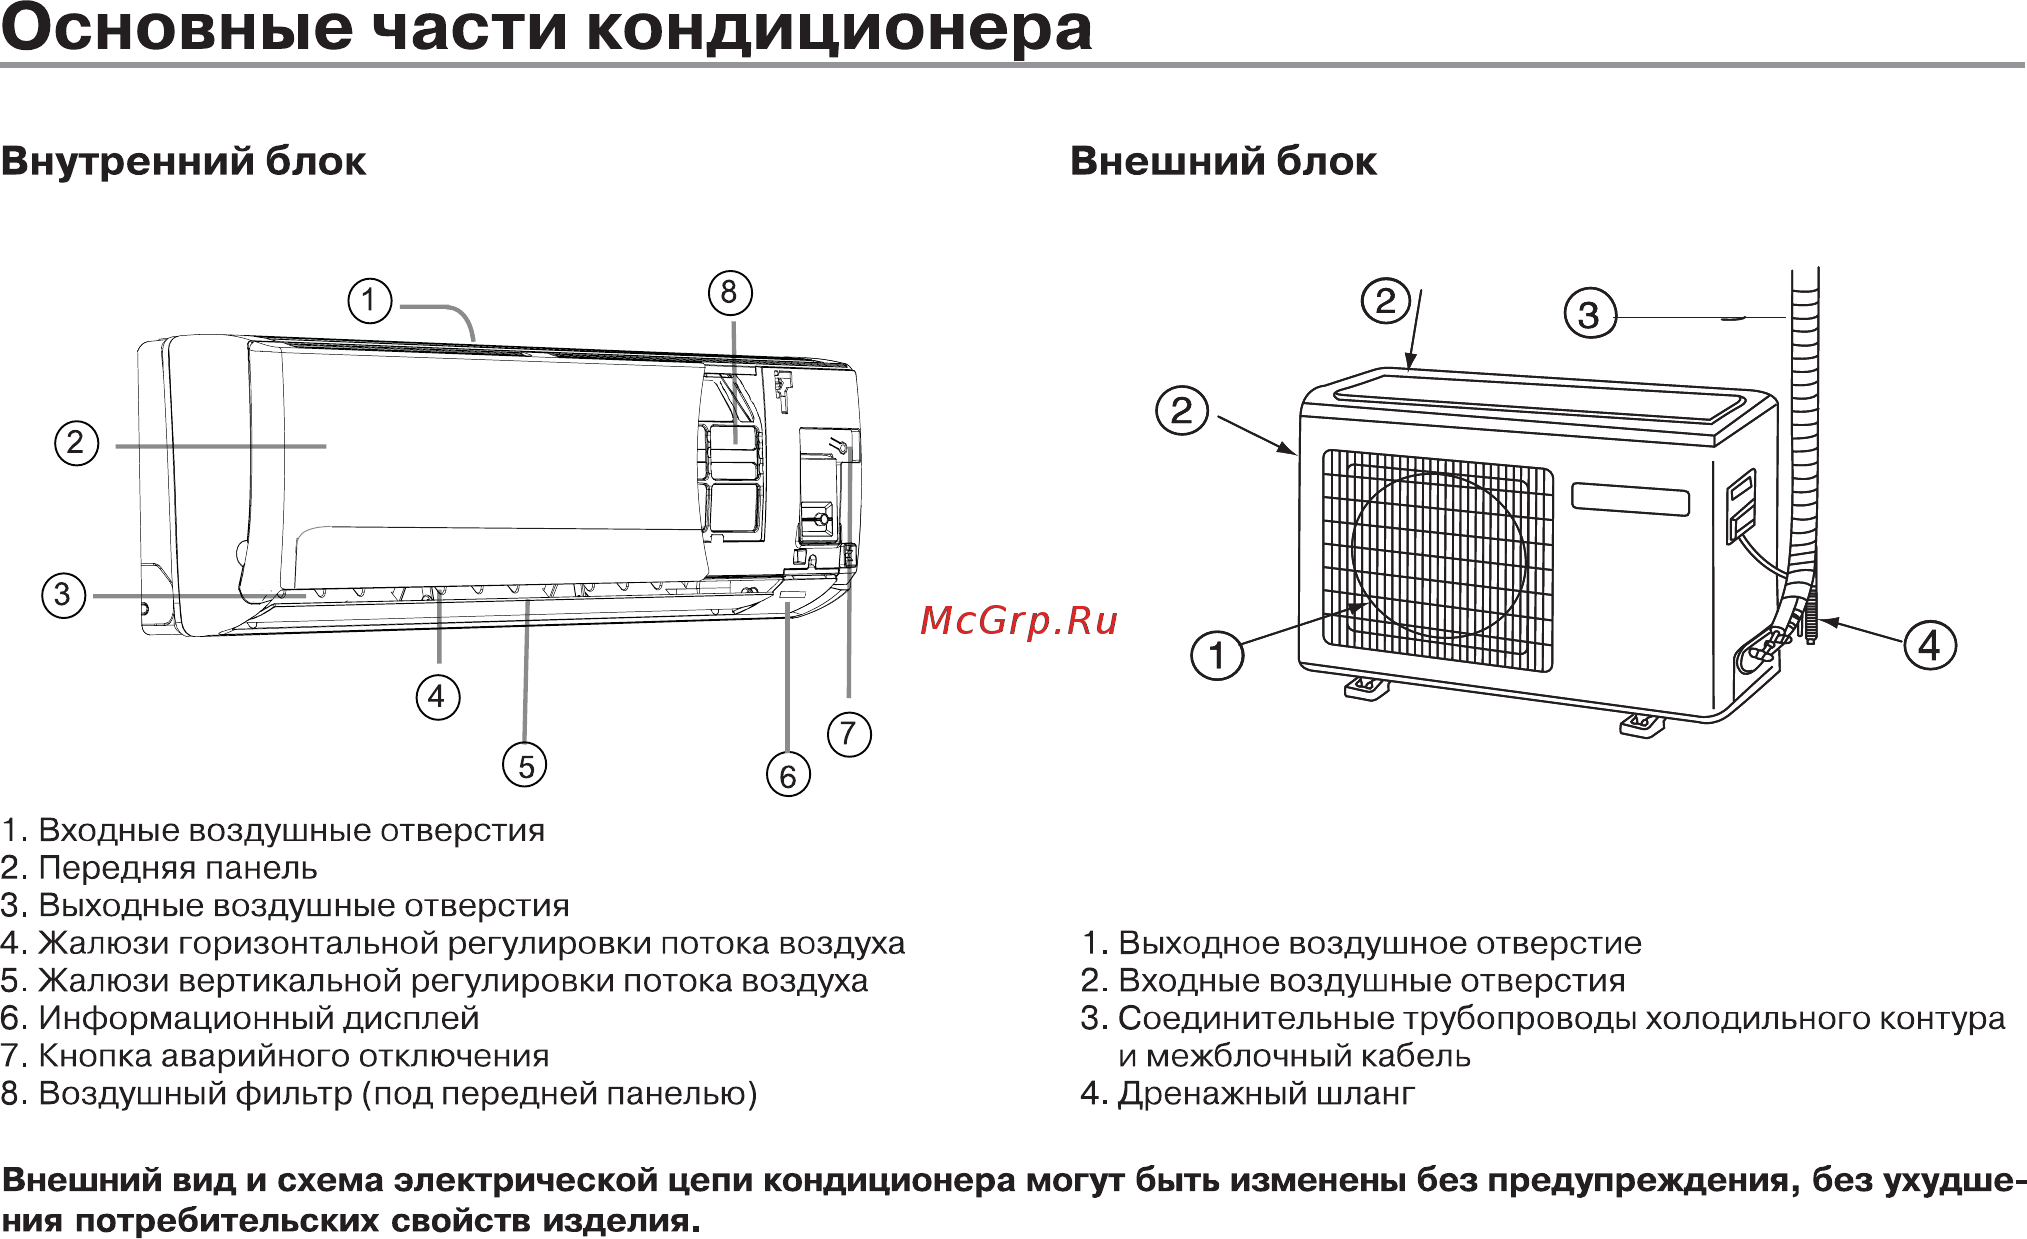 Стояночный кондиционер для микроавтобуса: нюансы выбора и установки › usedcars.ru — автомобильный портал